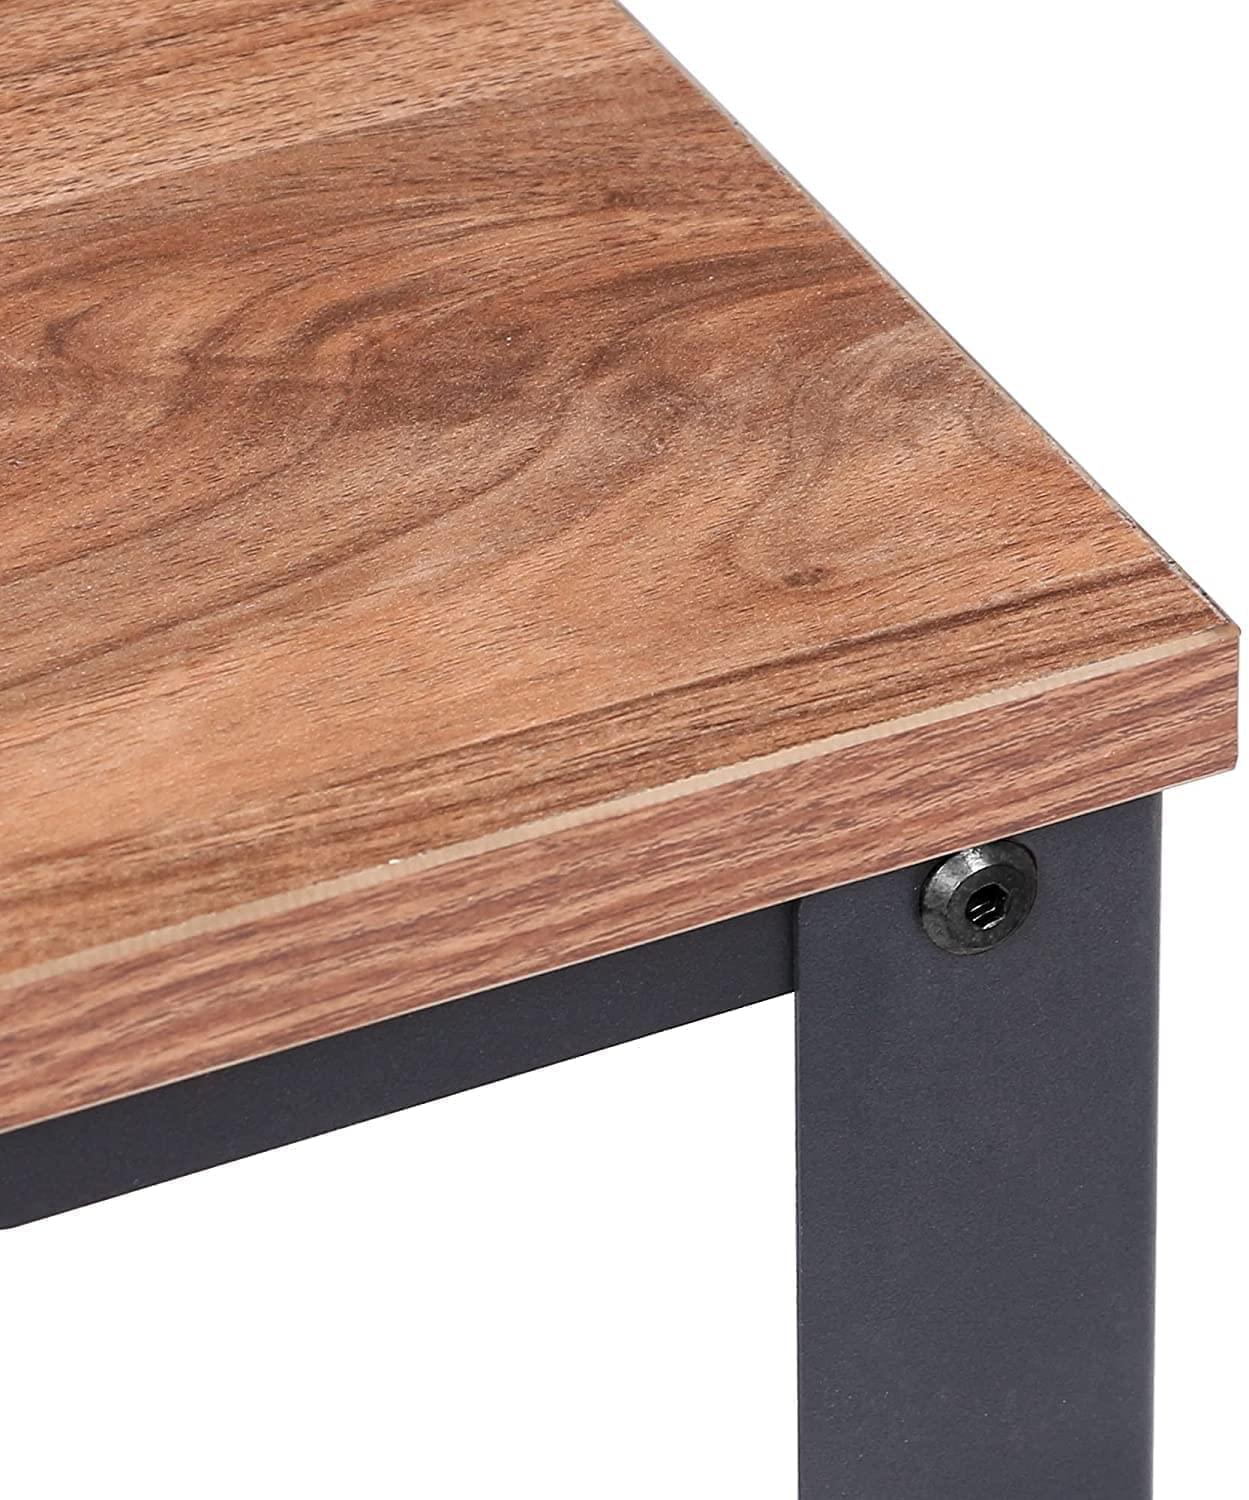 2 Tier Vintage Brown Wood/Metal Steel Industrial BedSide Nightstand Living Room End Table Desk With Mesh Storage